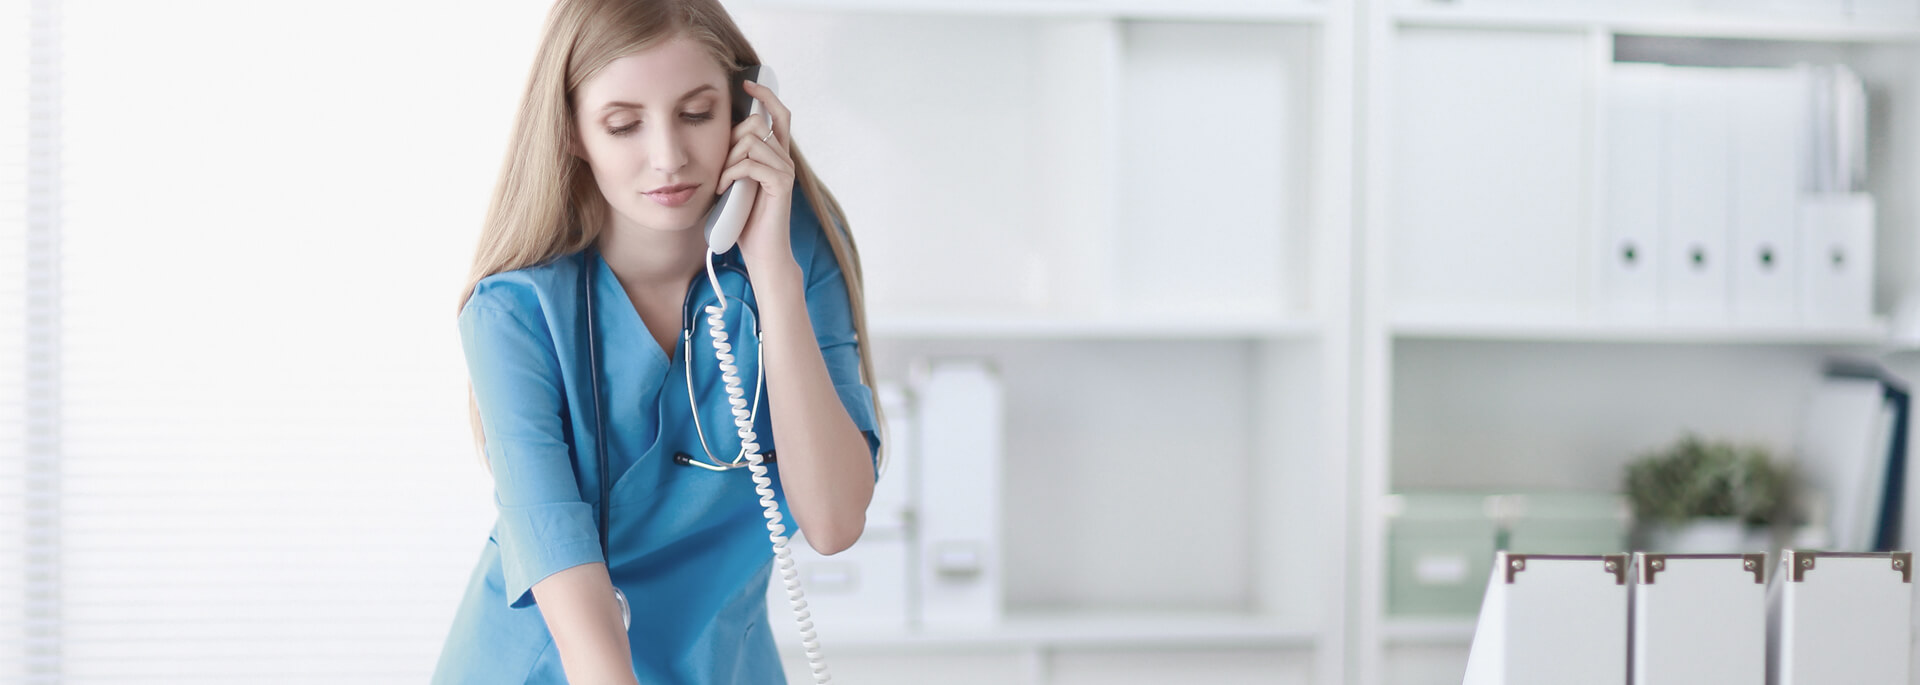 Jak Cię słyszą tak Cię piszą – wpływ rejestracji telefonicznej w gabinecie ginekologicznym na satysfakcję Pacjentów